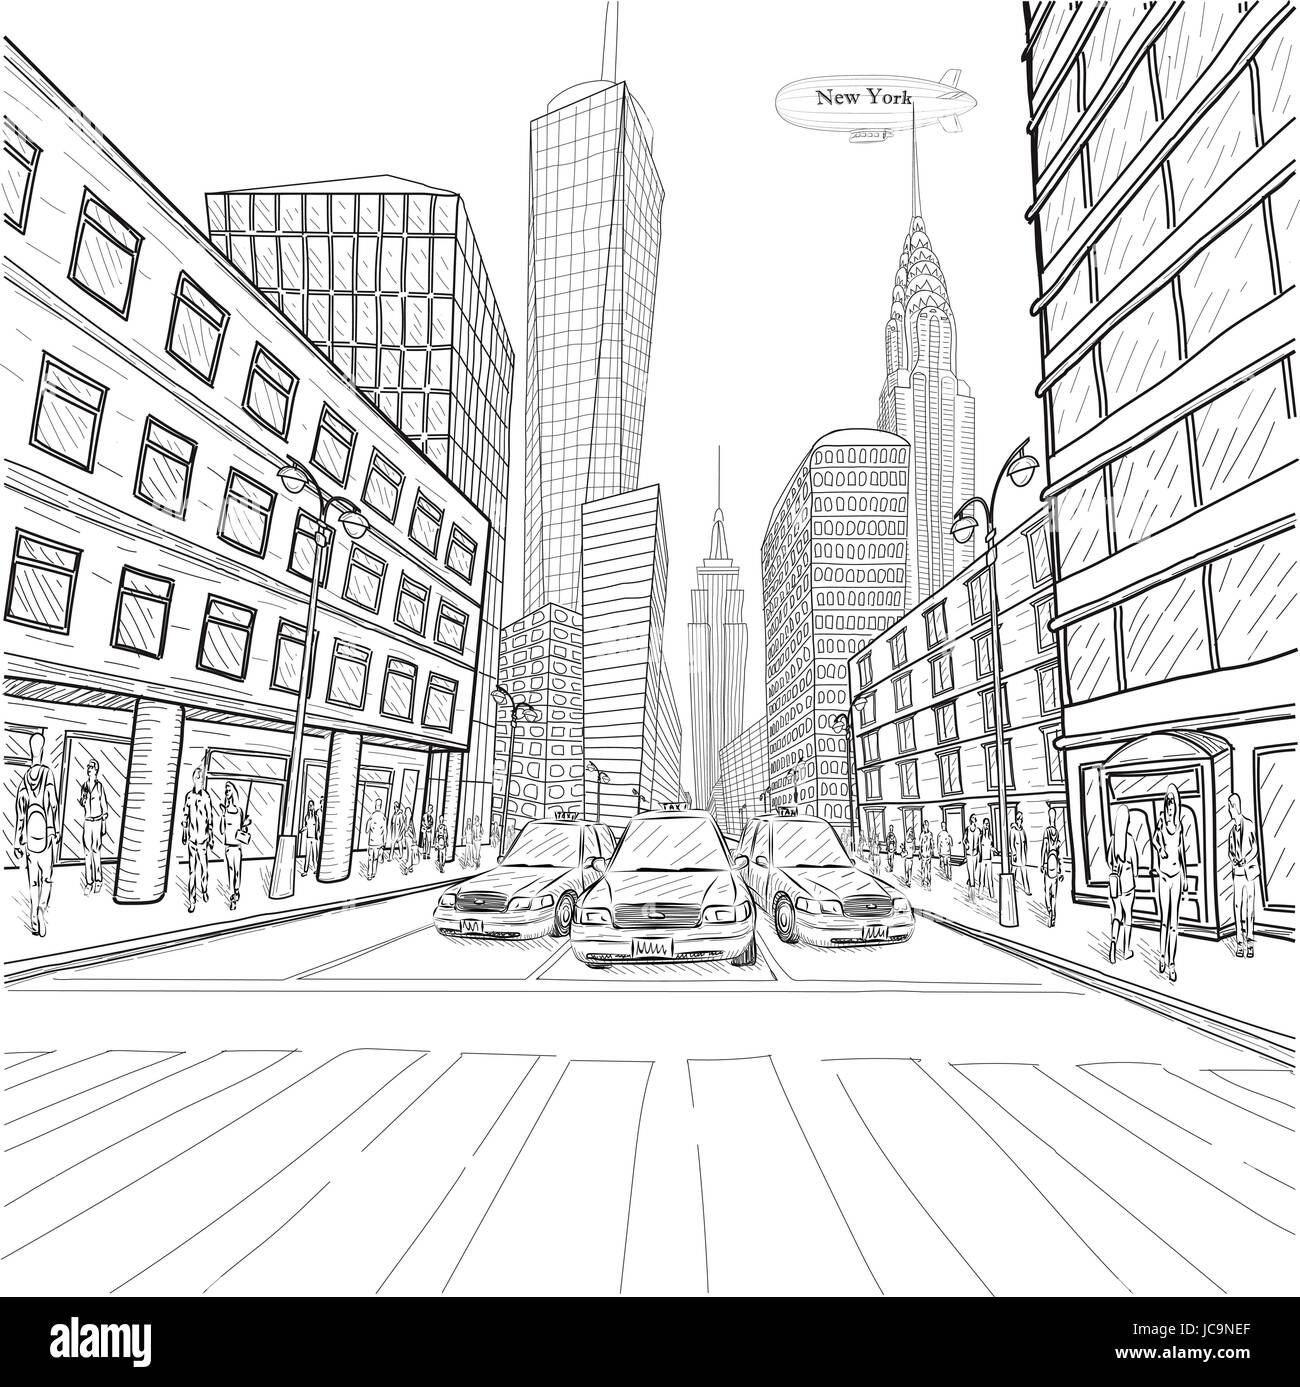 Londres New York Empire State building Chrysler Building city taxi paysage cars car les gens de la rue libre vecteur silhouette belle ligne noir outl Illustration de Vecteur